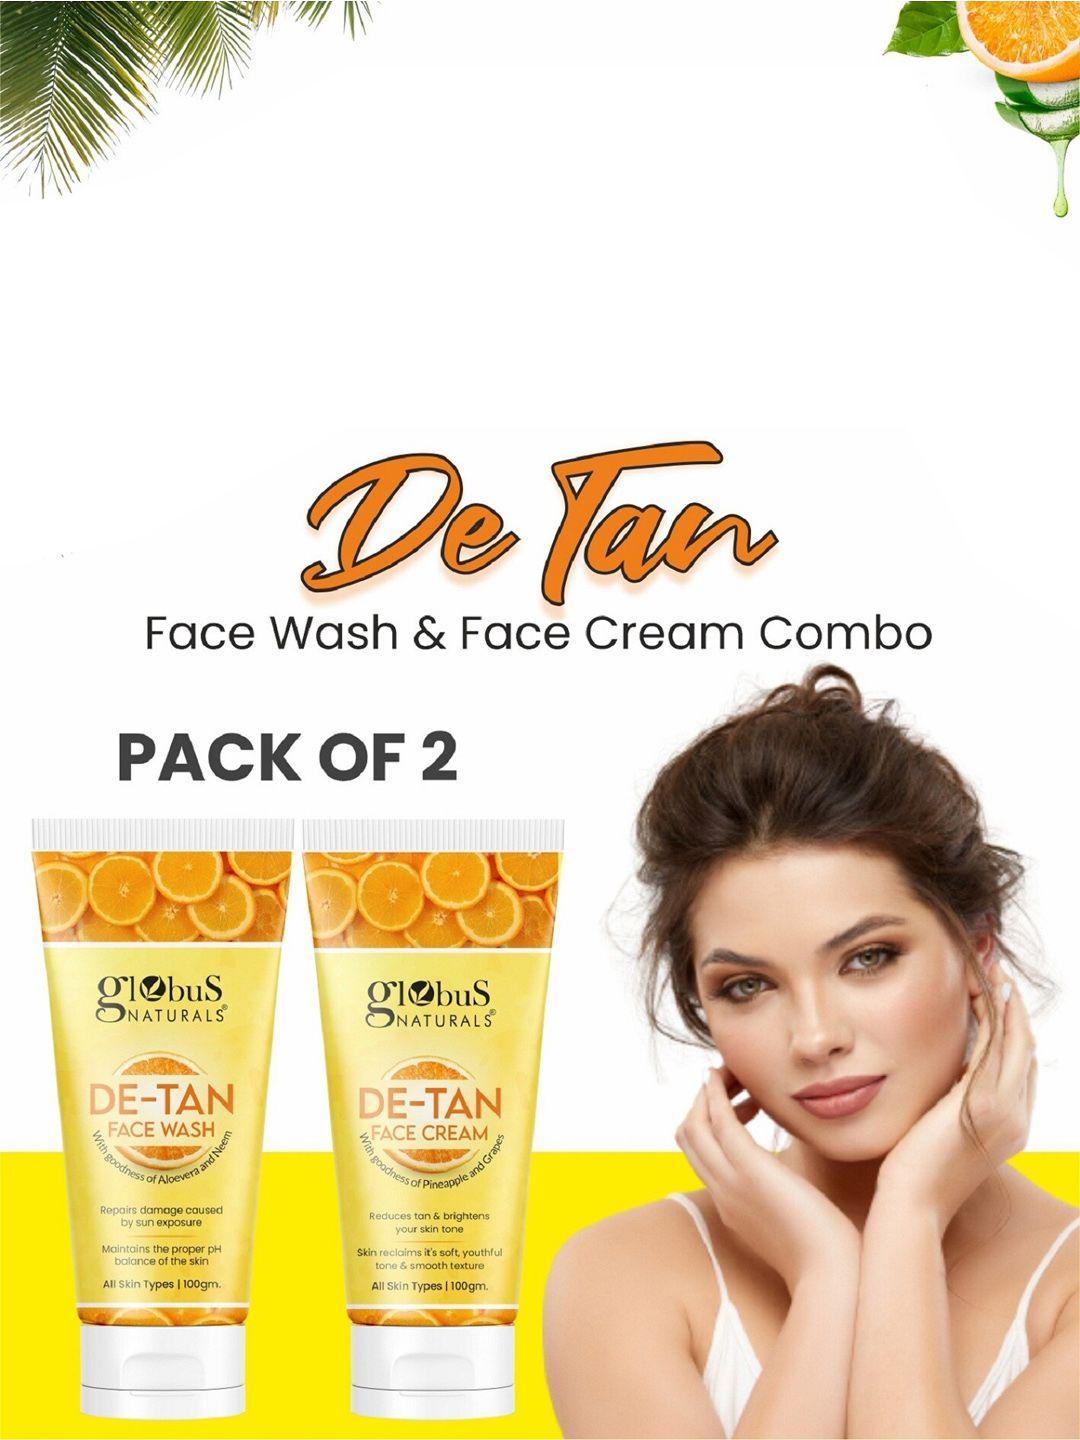 globus naturals set of de tan face wash & face cream